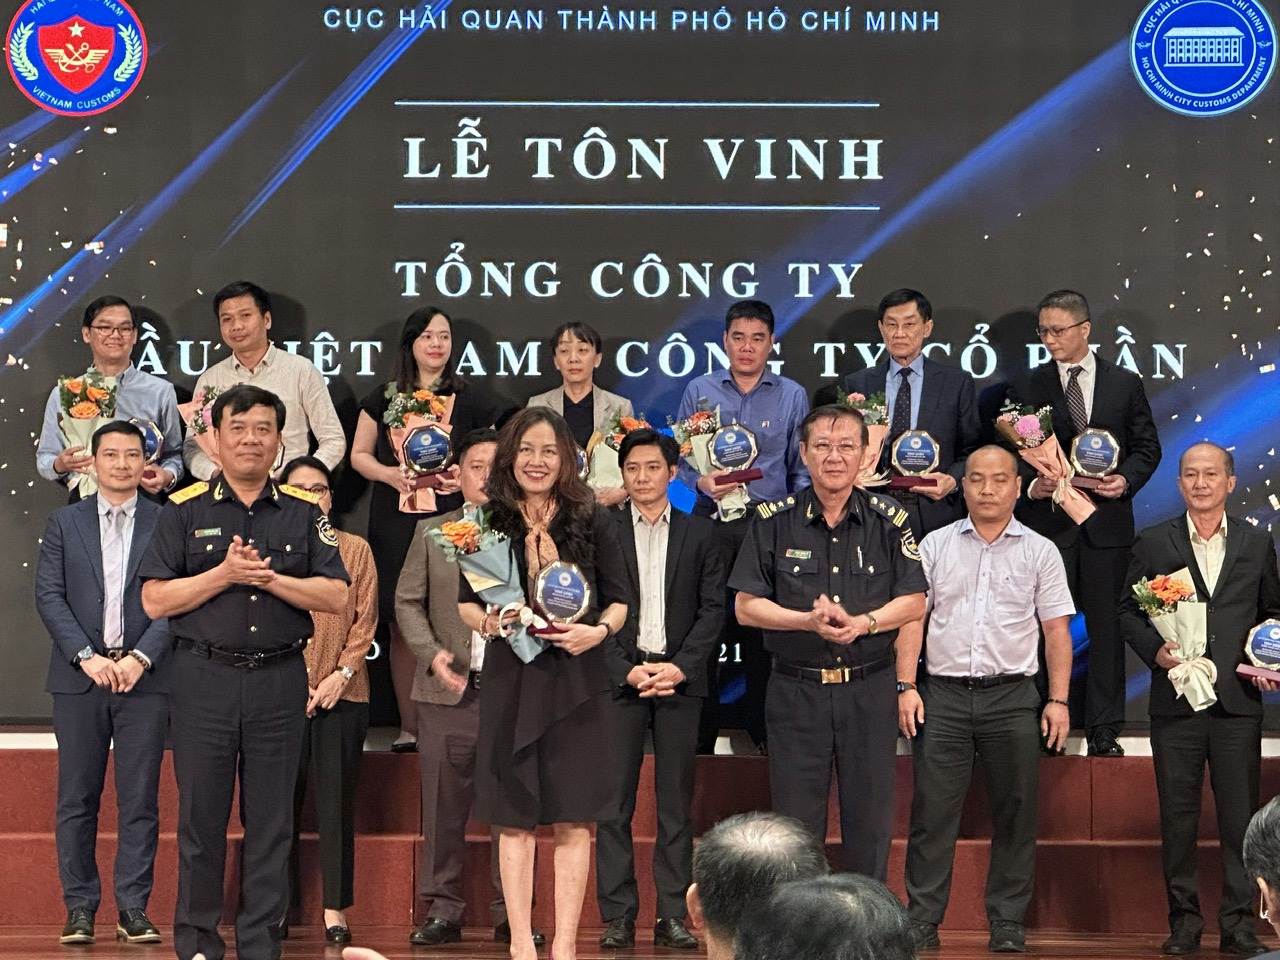 Ông Nguyễn Văn Thọ - Phó Tổng Cục trưởng Tổng cục quan (bên trái) trao kỷ niệm chương cho các doanh nghiệp. Ảnh: TS